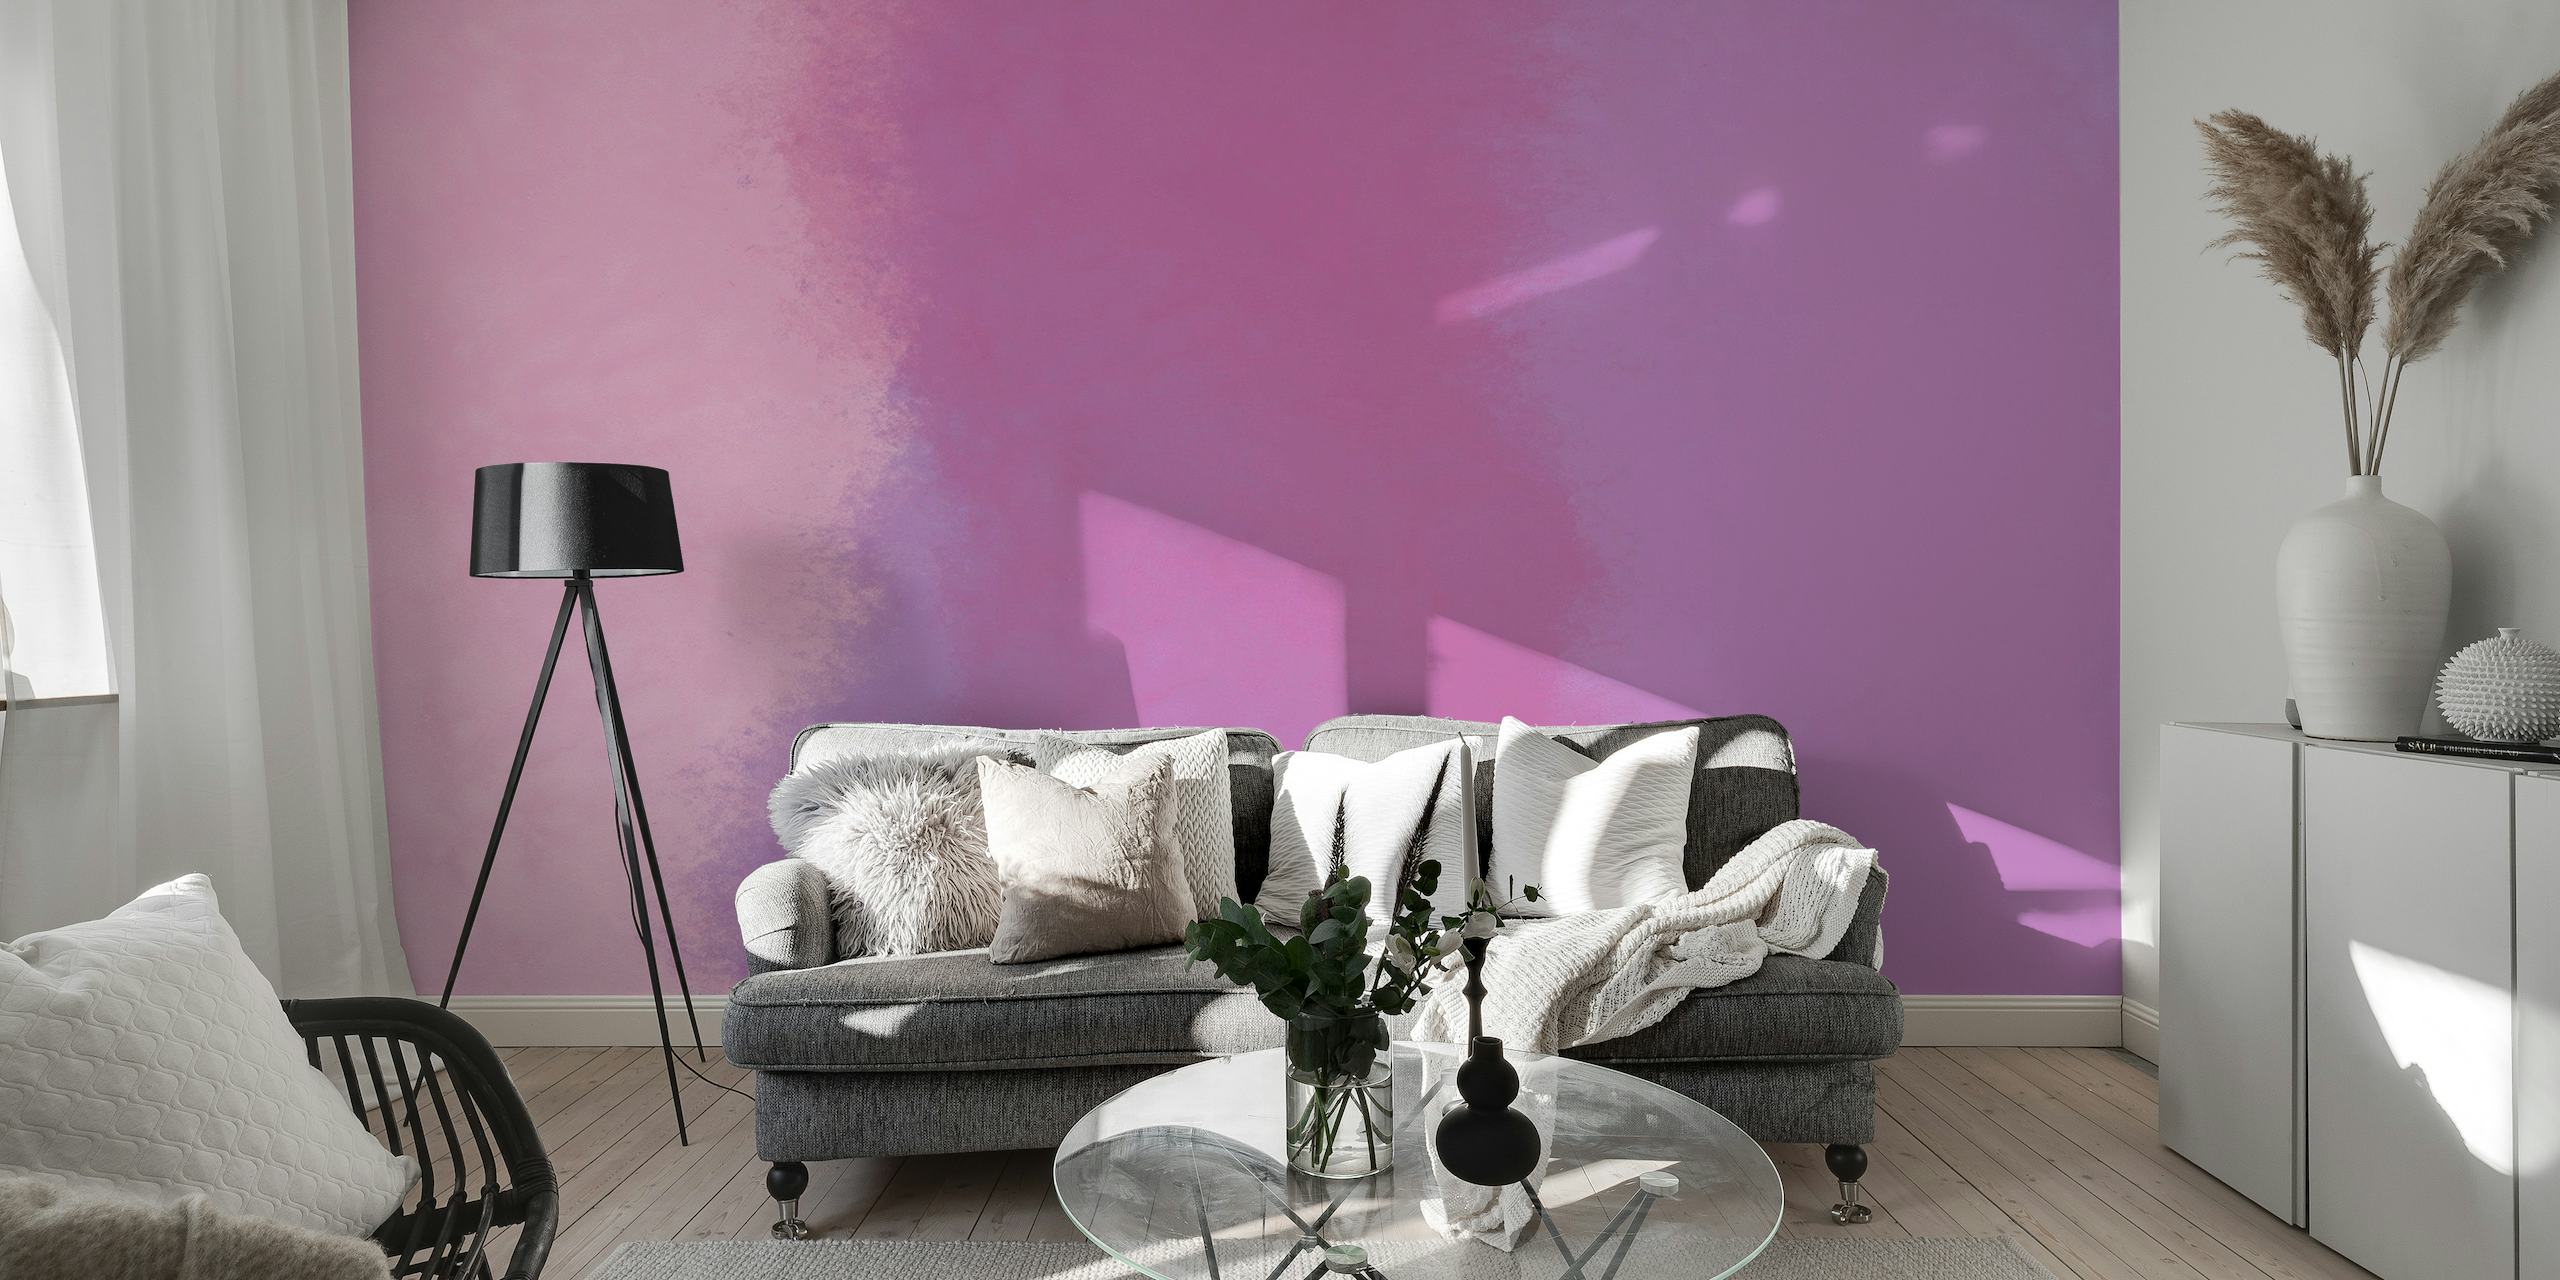 Un murale soft-focus con sfumature di rosa che ricordano i petali di rosa